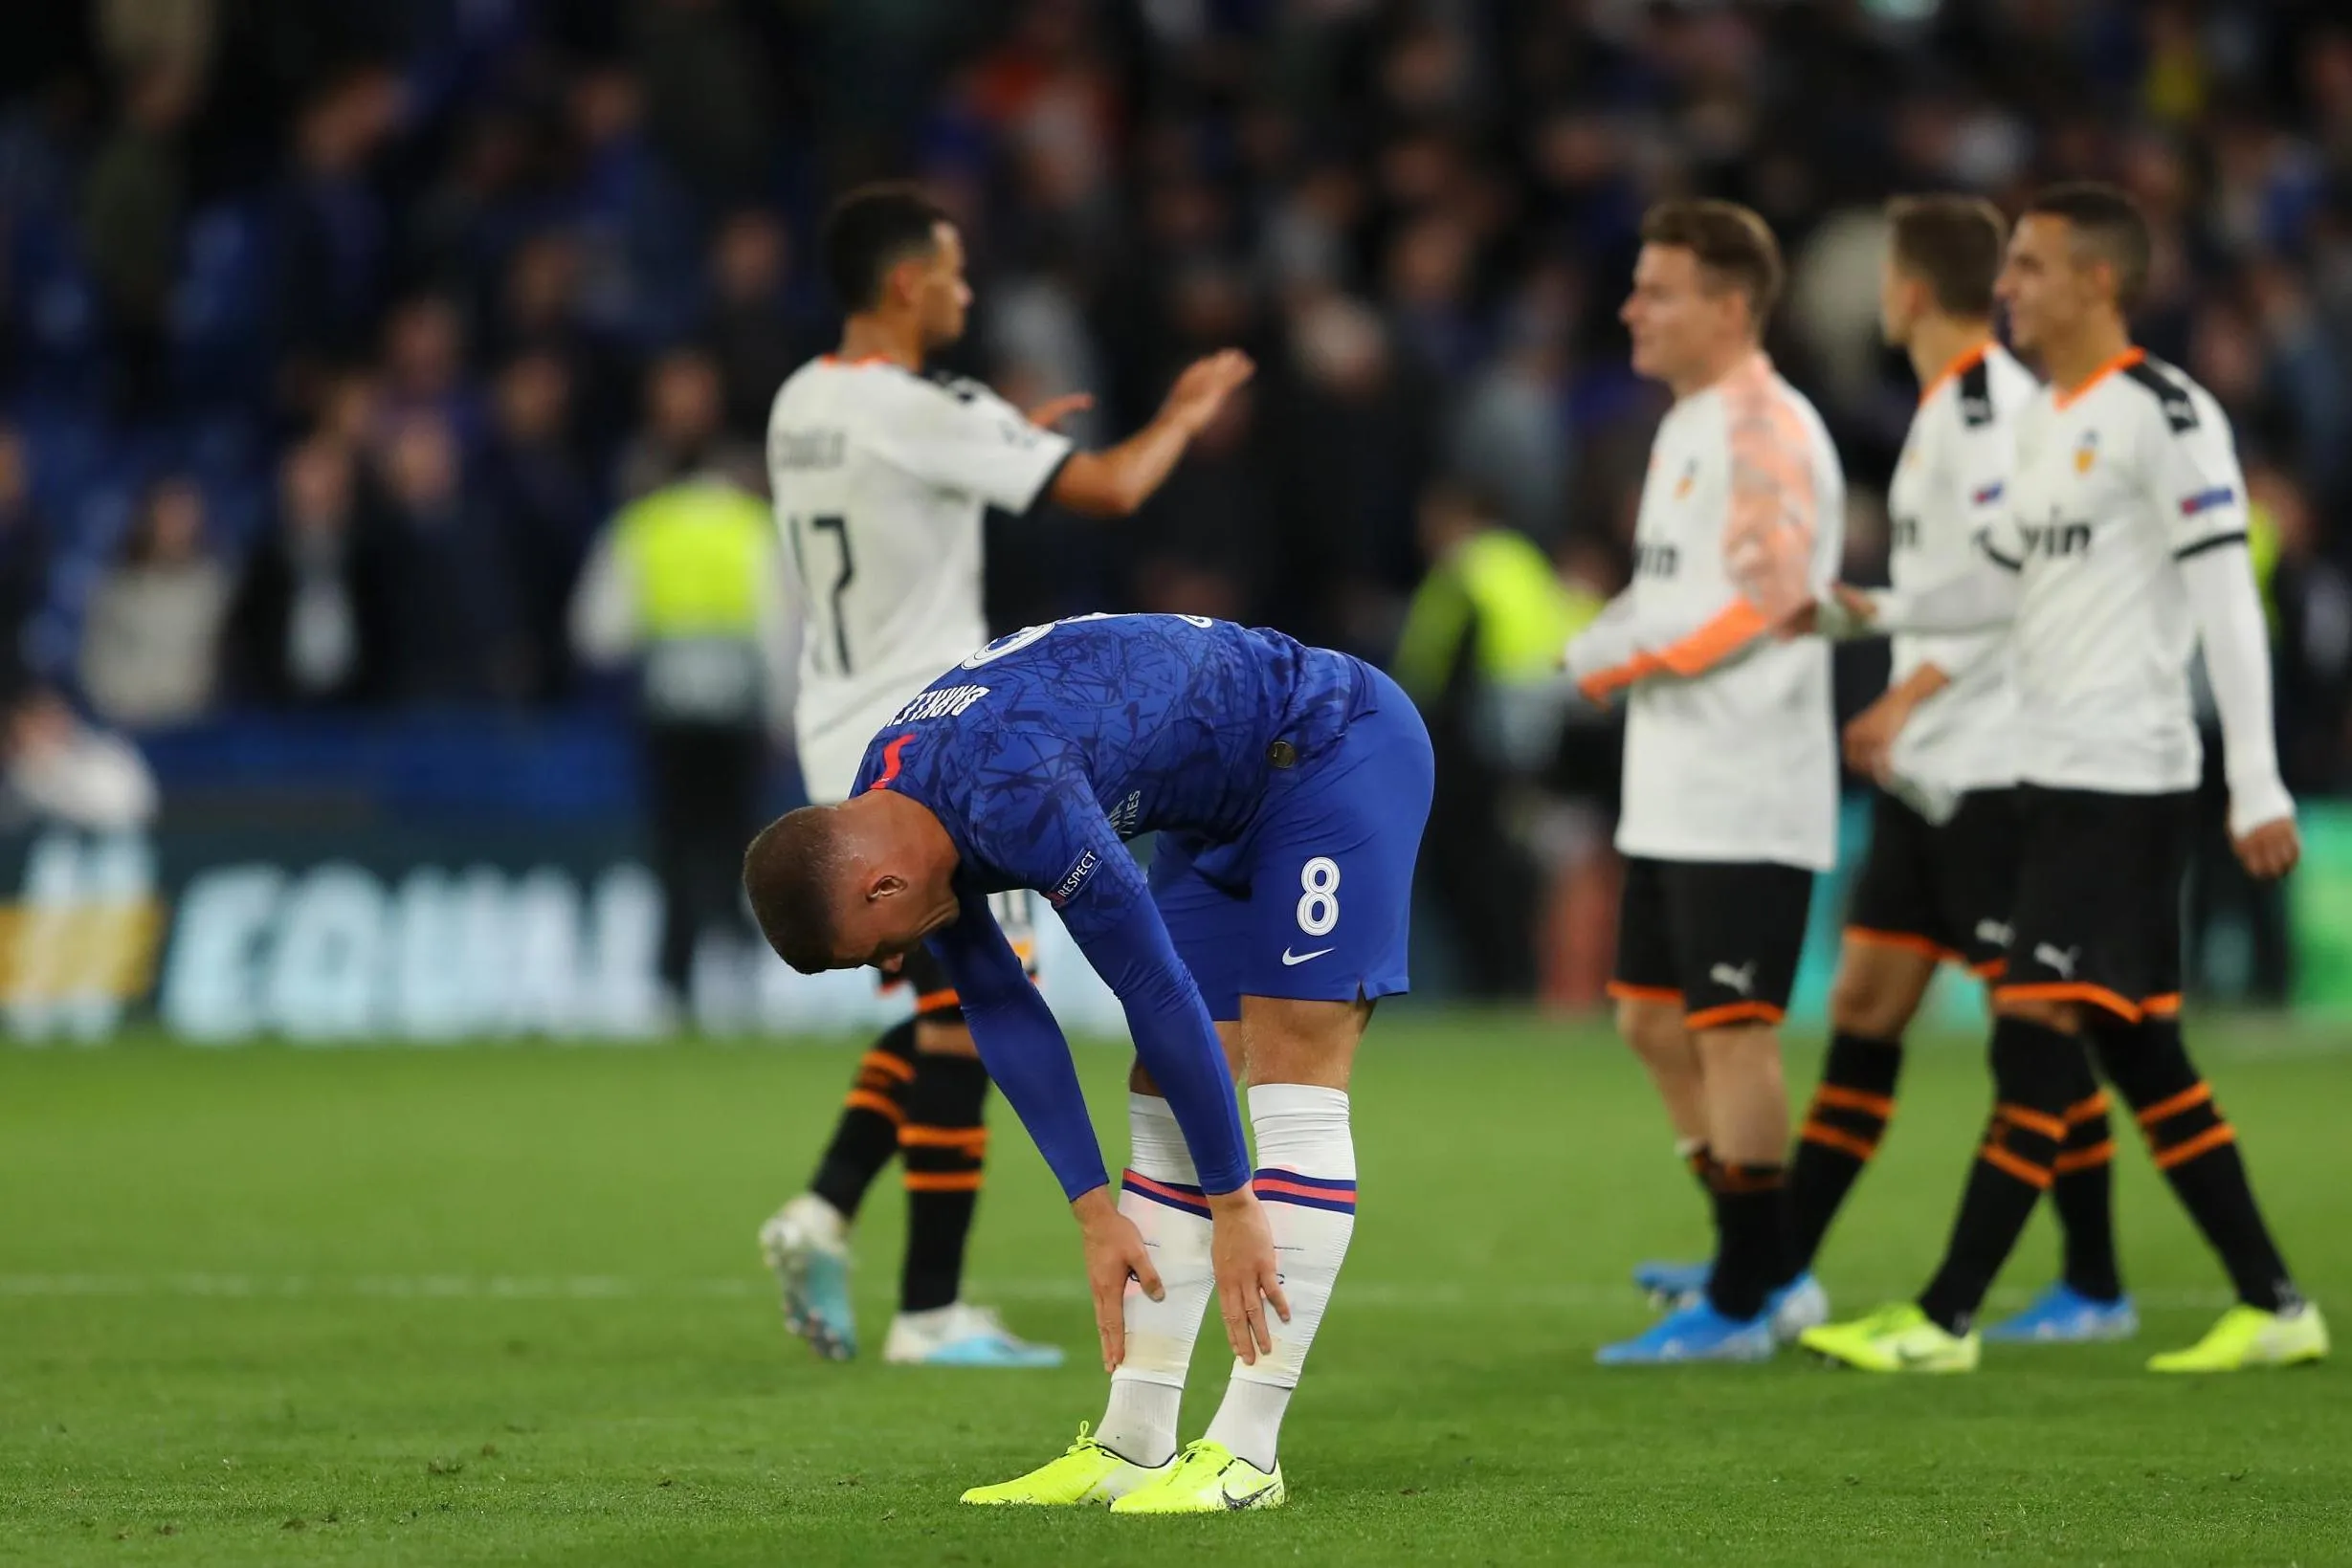 Diễn biến chính Chelsea thua Valencia ngay trên sân nhà